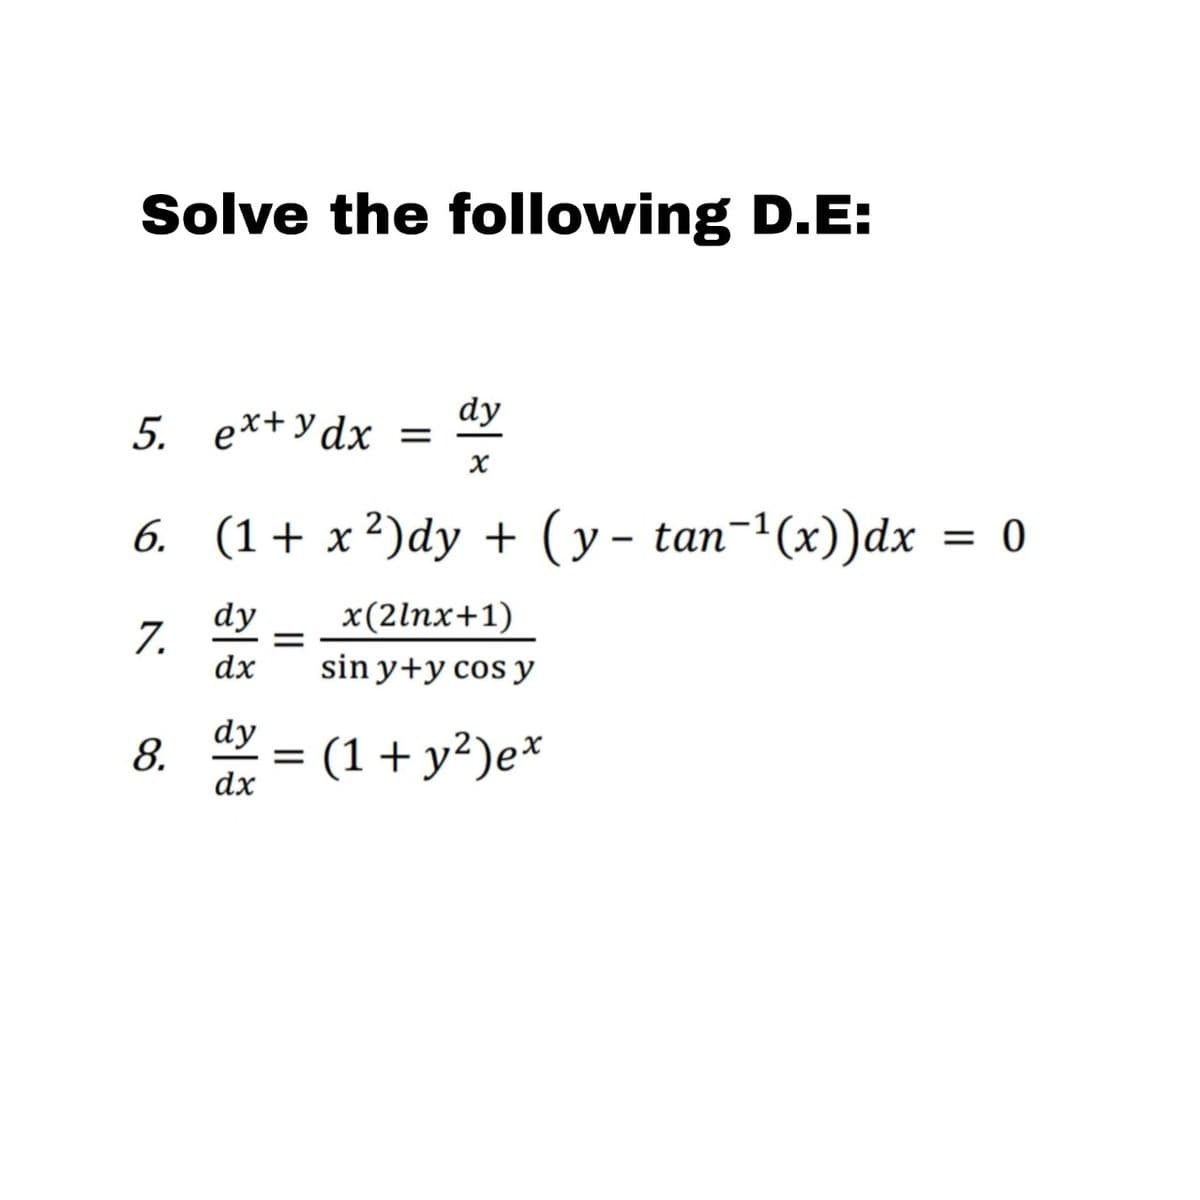 Solve the following D.E:
dy
5. ex+ydx =
x
6. (1+x²)dy + (y- tan¯¹ (x))dx = 0
7.
8.
dy
dx
dy
33
dx
=
x(2lnx+1)
sin y+y cos y
= (1+ y²)ex